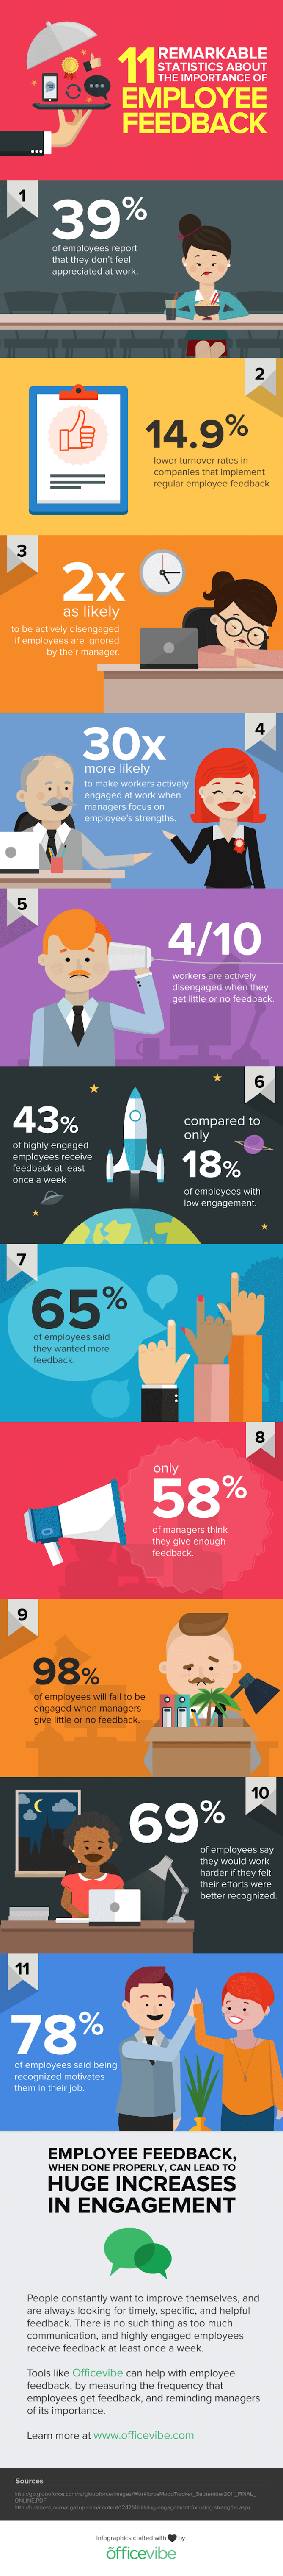 employee-feedback-infographic-1.png